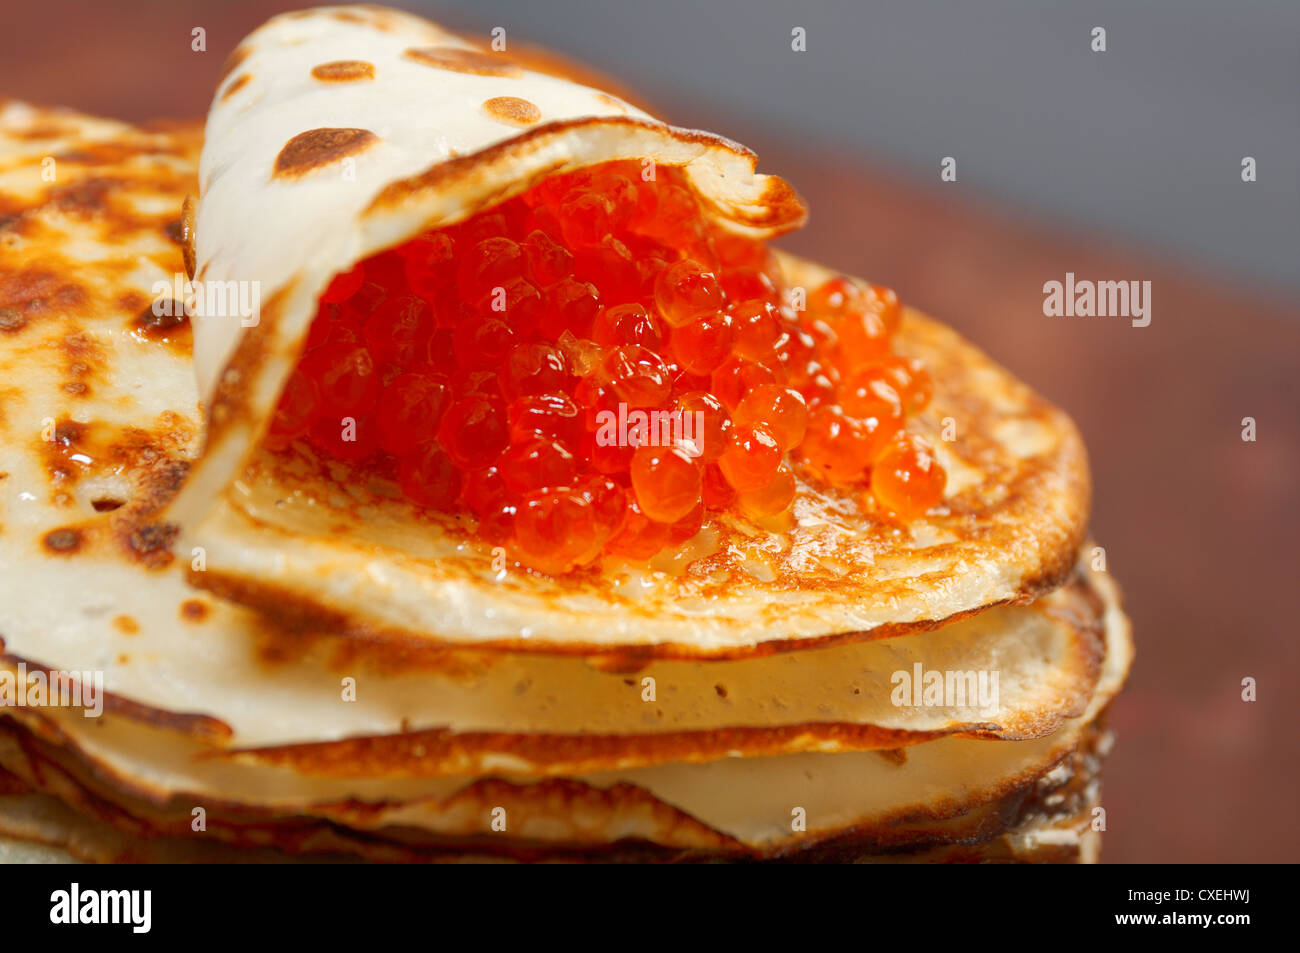 Russische Pfannkuchen mit rotem Kaviar Stockfotografie - Alamy